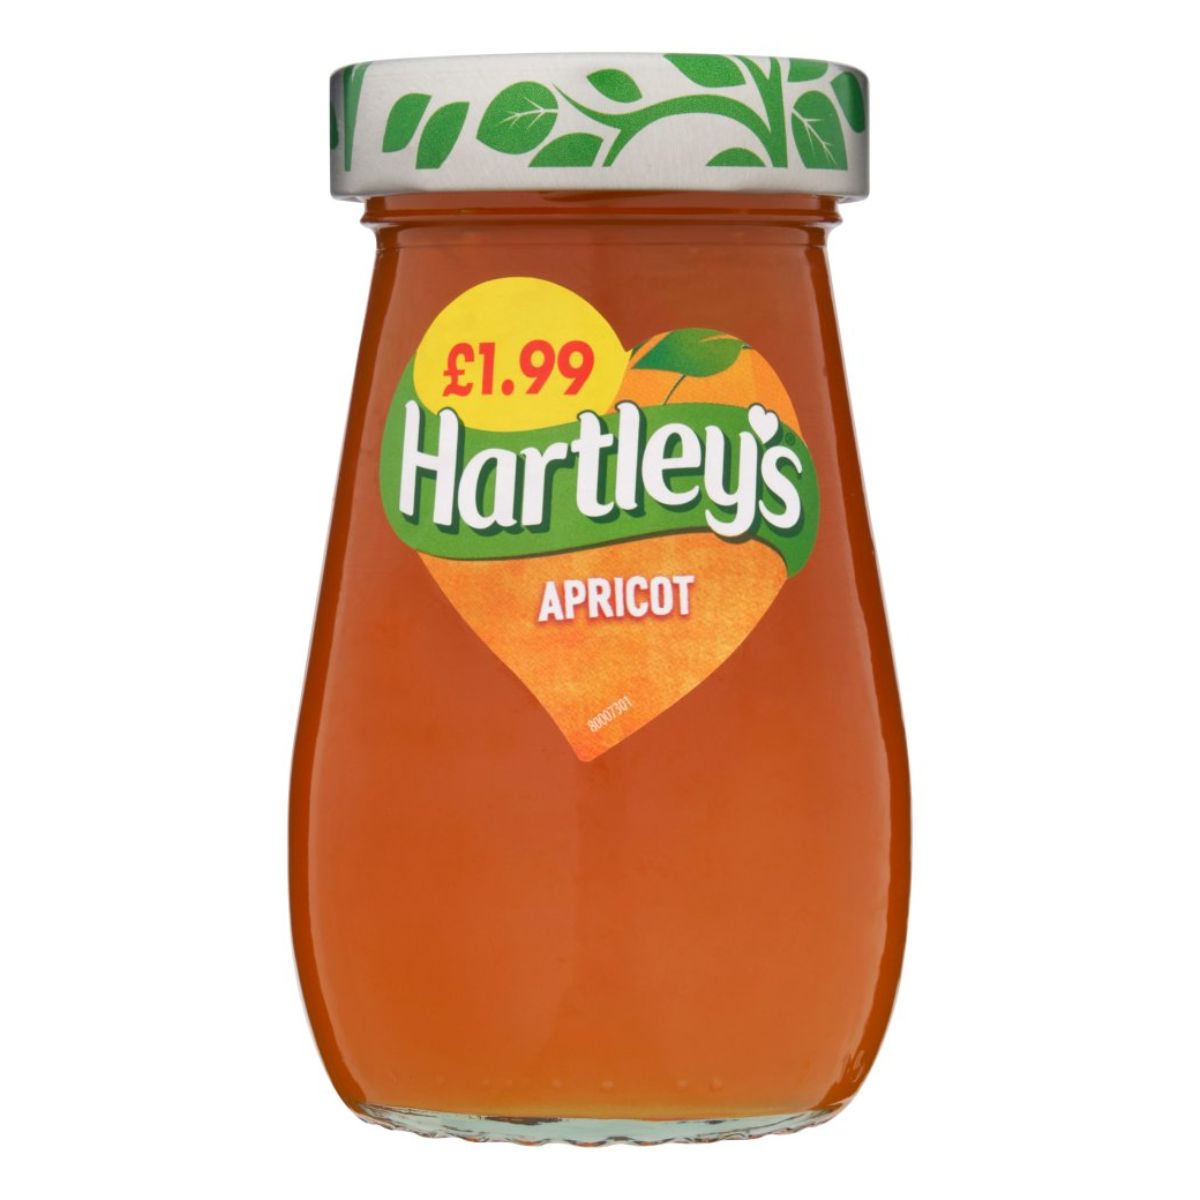 A jar of Hartleys - Apricot Jam - 300g.